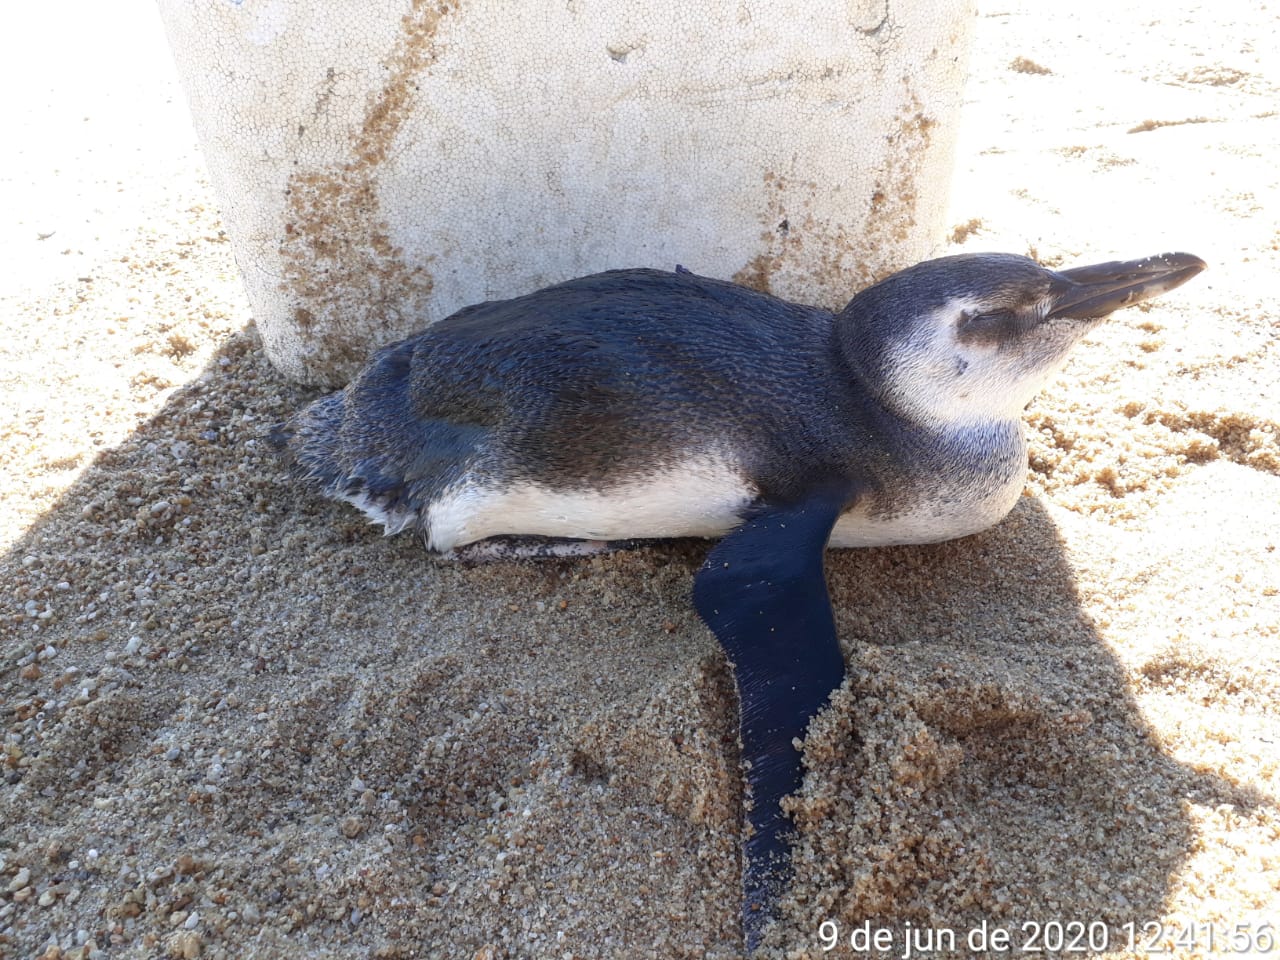 Pinguim foi encontrado cansado e desidratado (Foto: Divulgação Instituto Argonauta)